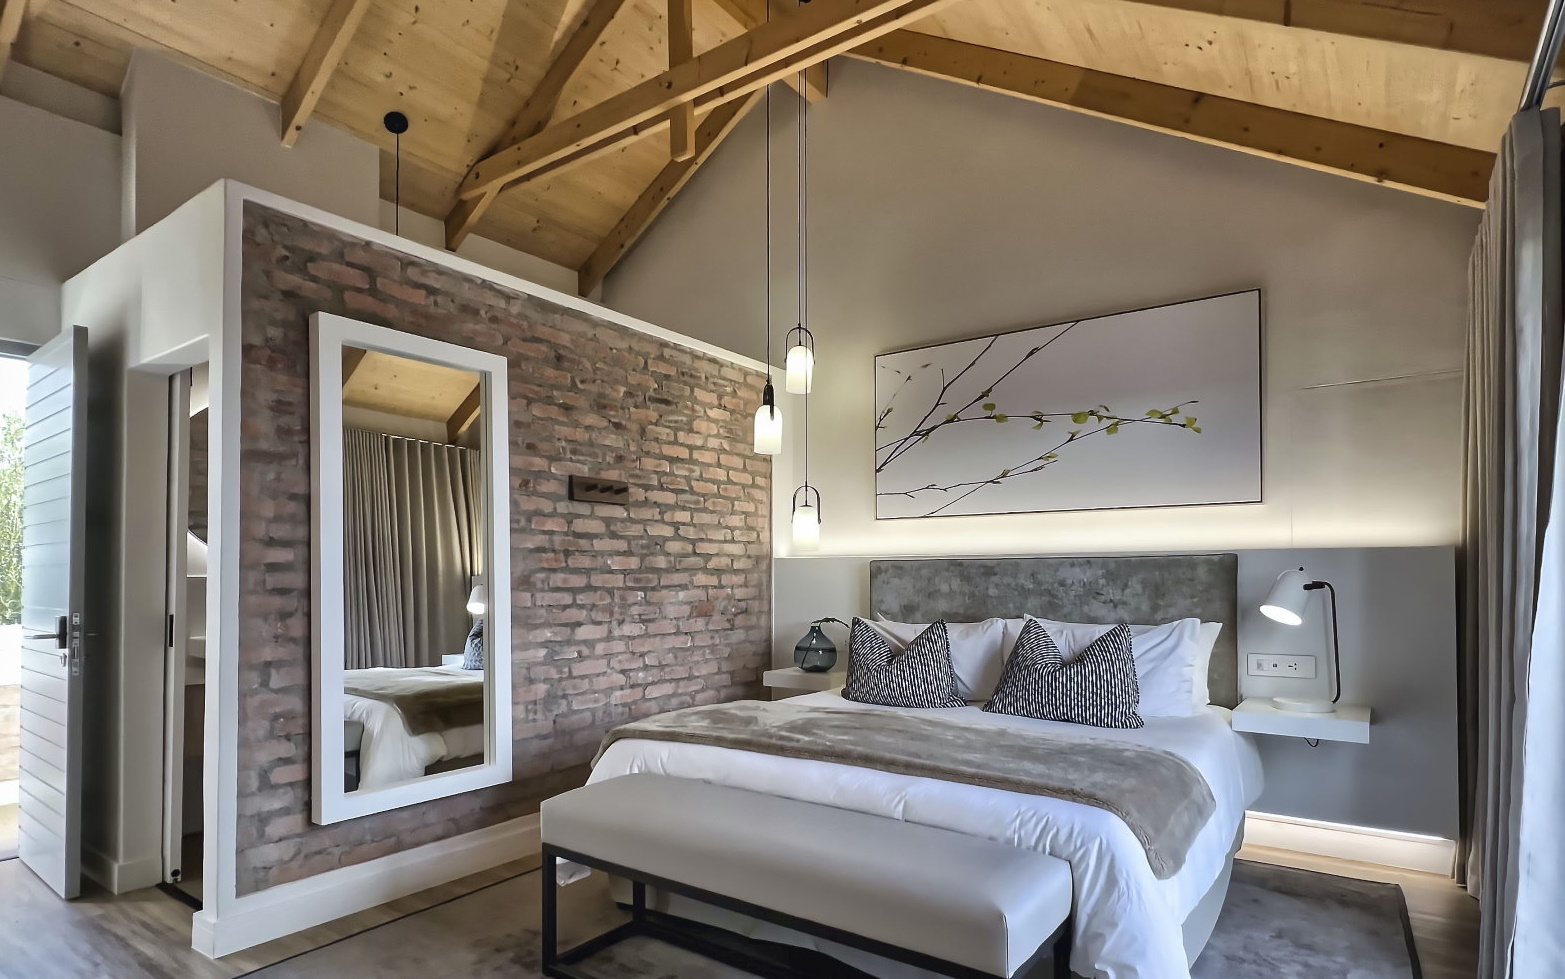 The Windhoek Luxury Suites Rooms Image